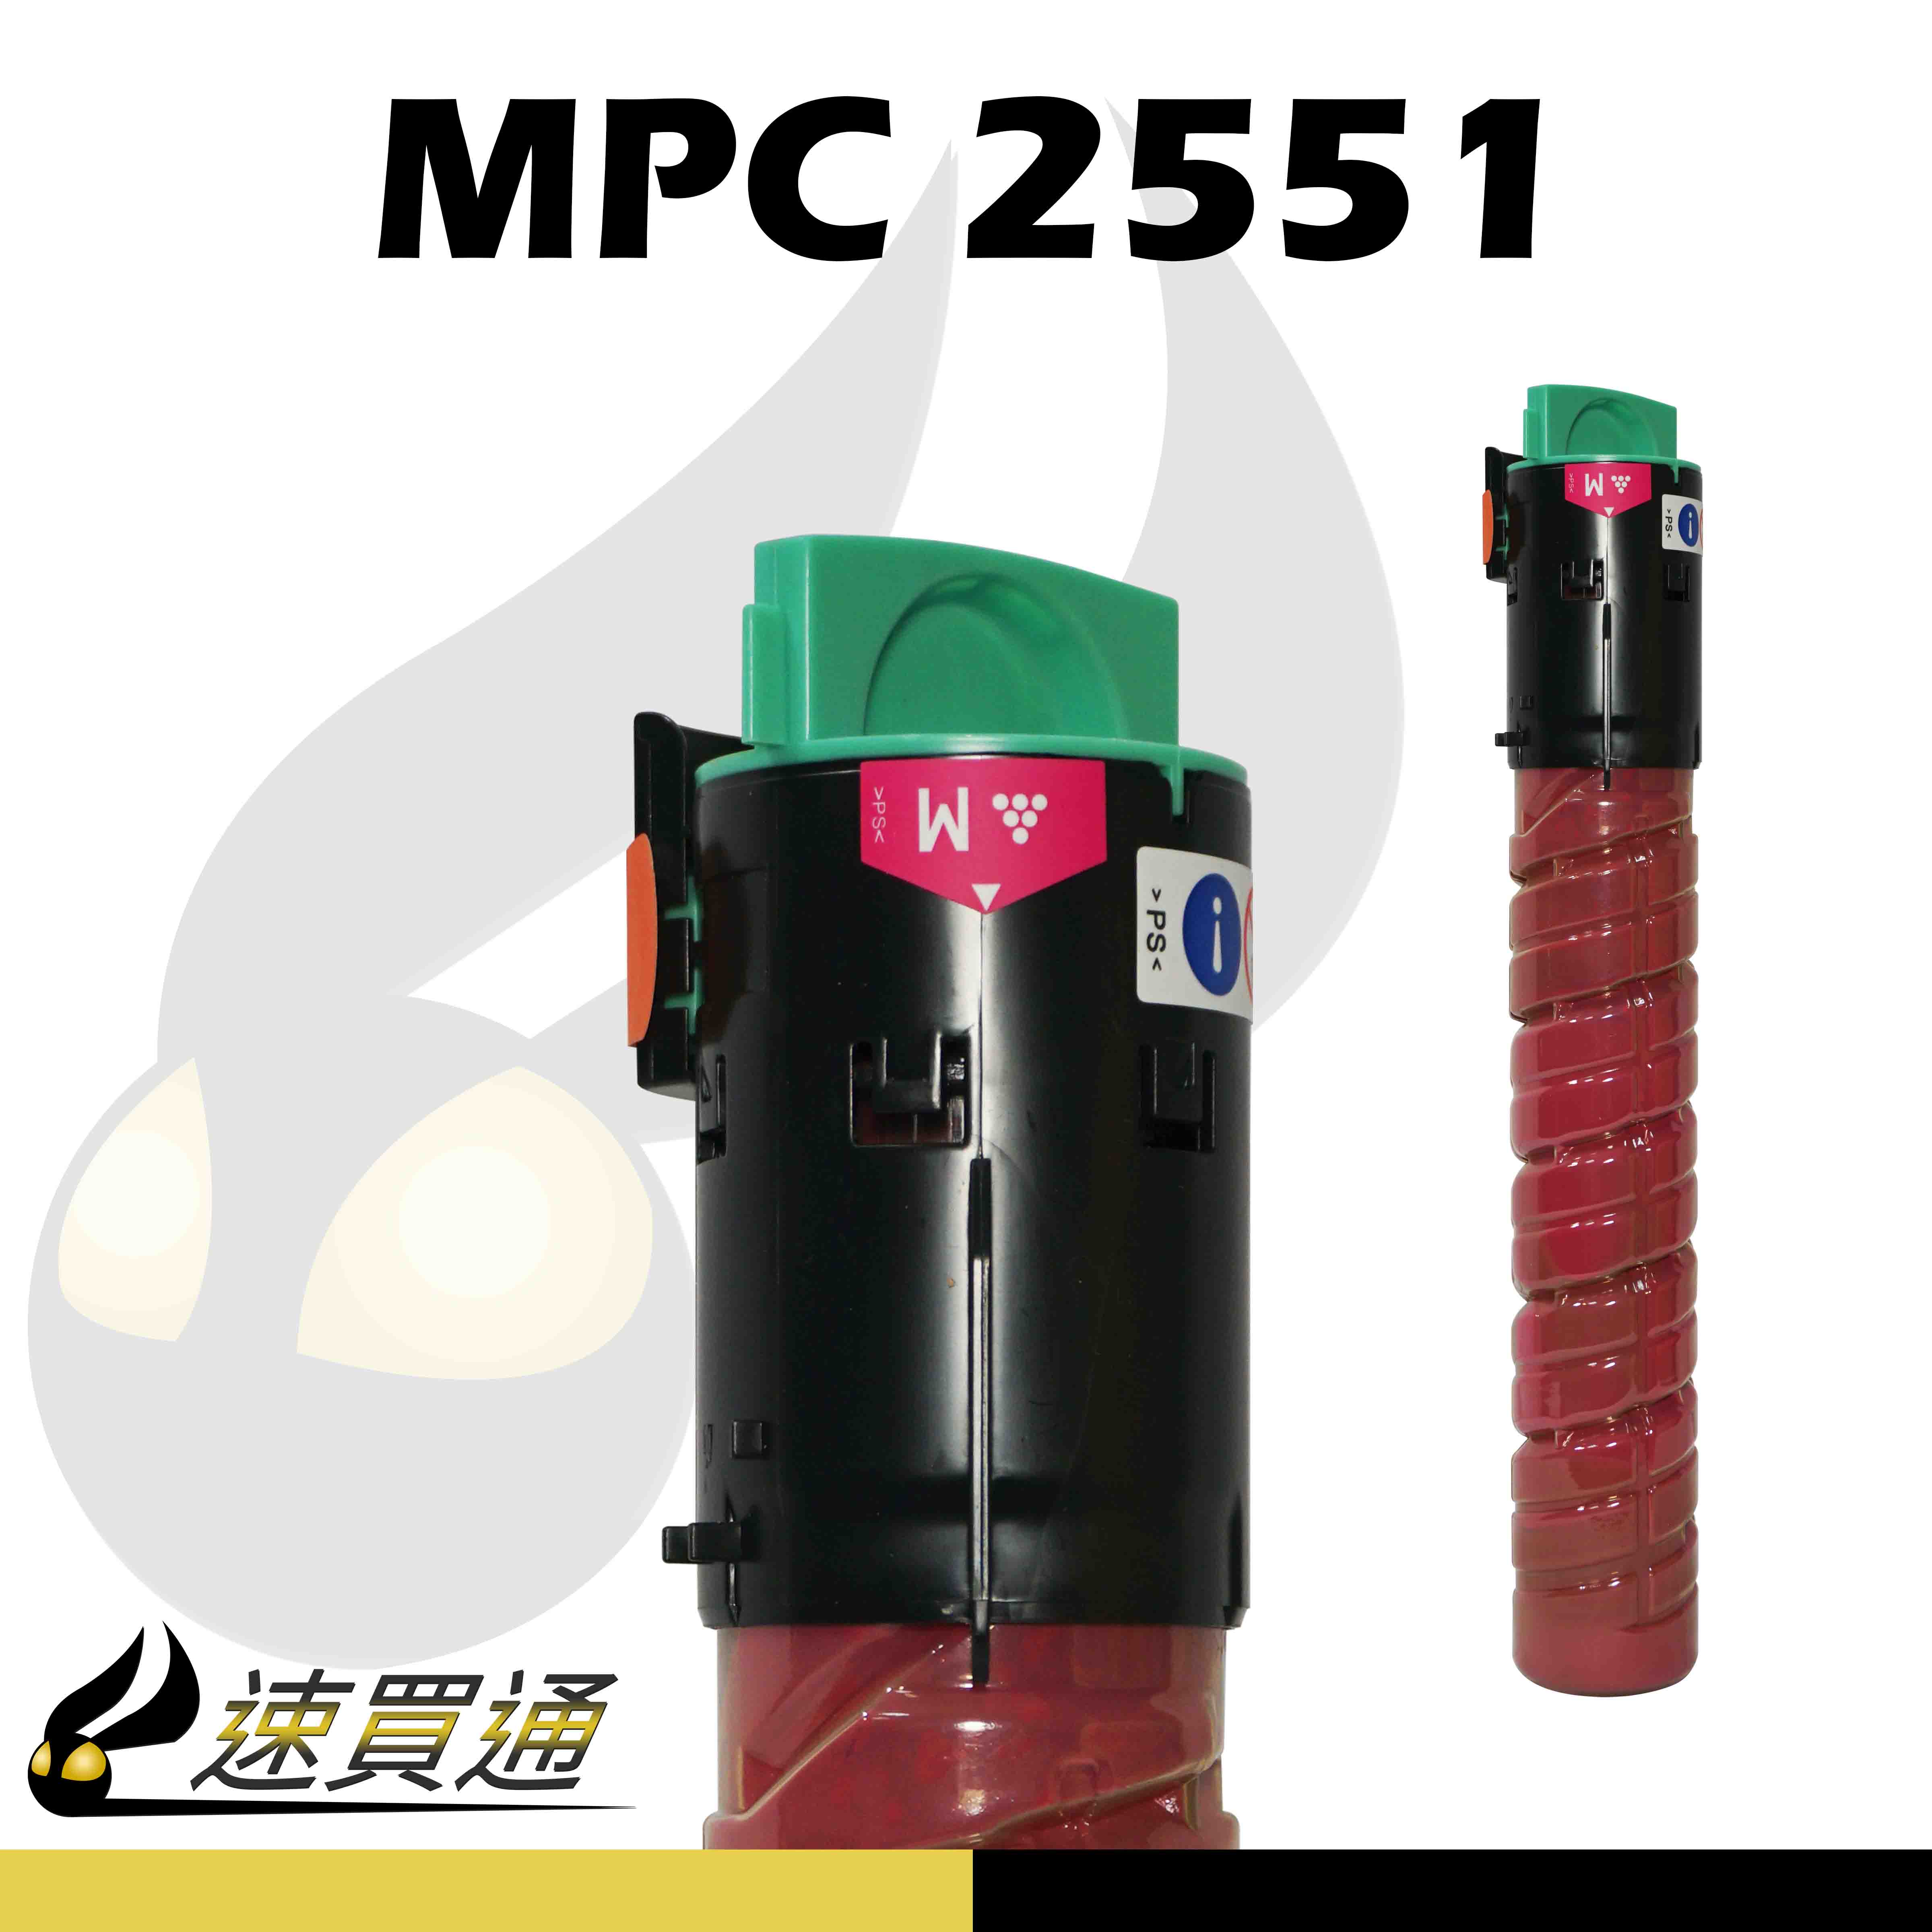 【速買通】RICOH MPC2551 紅 相容影印機碳粉匣